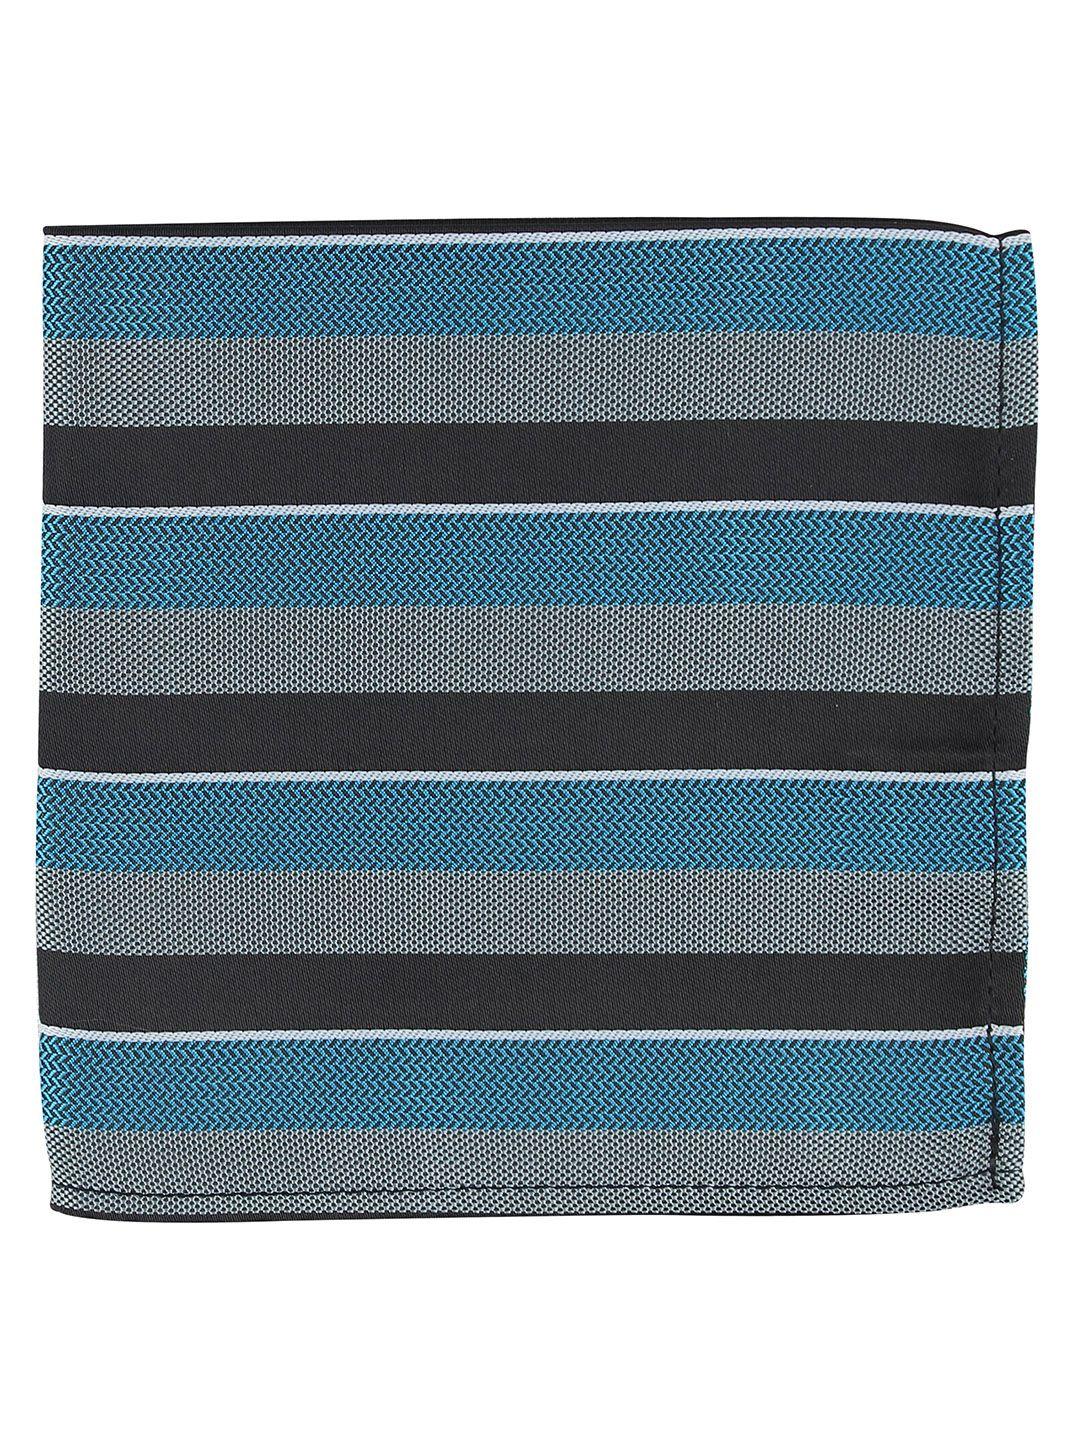 kovove men the magma blue & black striped pocket square